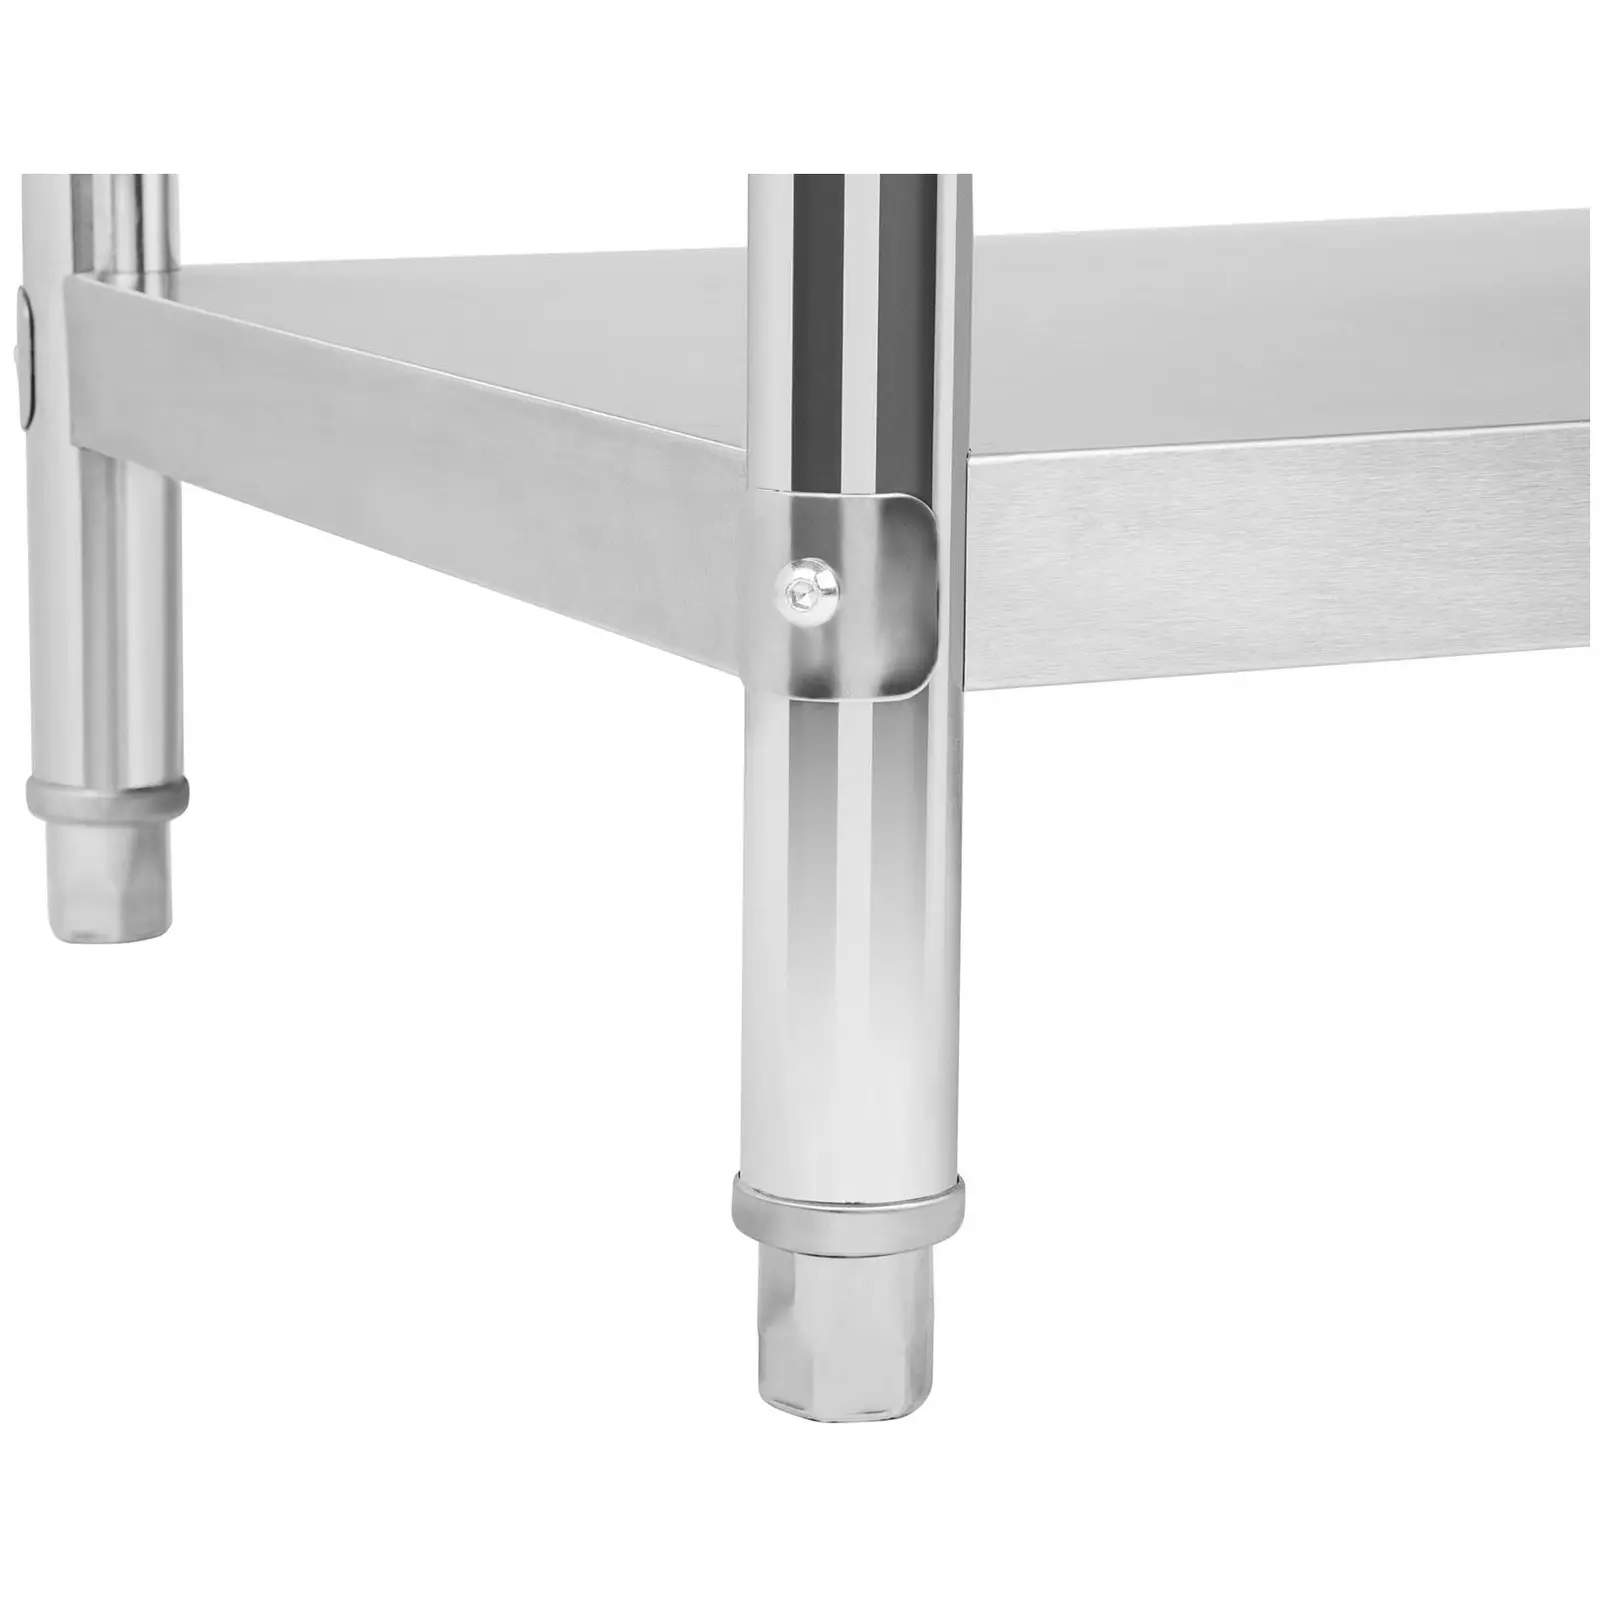 Stålbord - 150 x 60 cm – 130 kg bæreevne - med bagkant